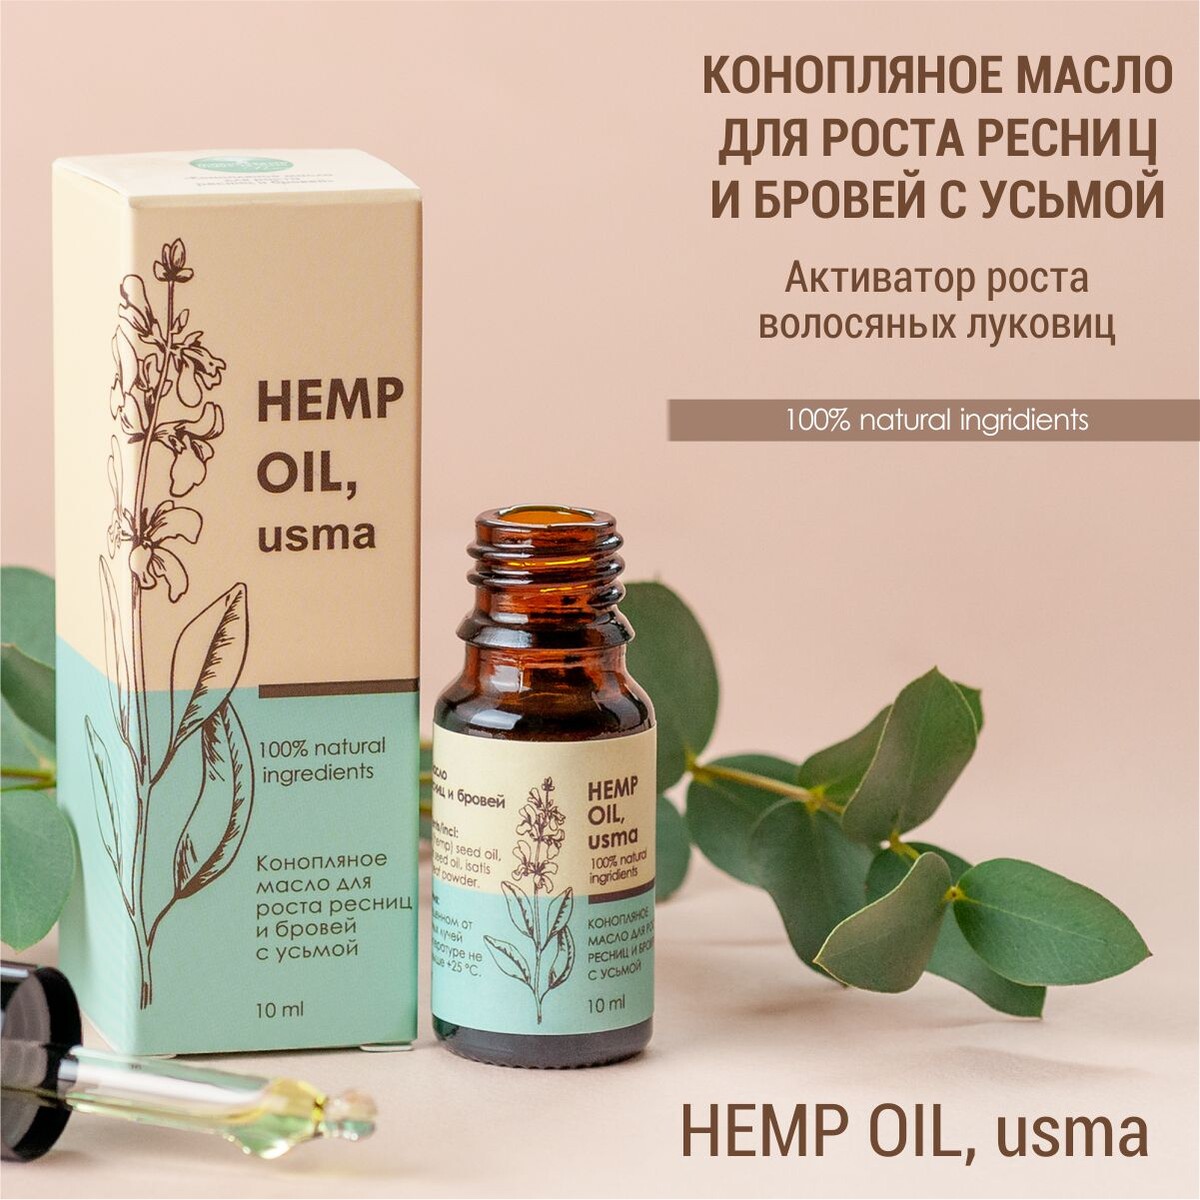 Конопляное масло для роста ресниц и бровей с усьмой (hemp oil, usma) сыворотка активатор maca hair роста